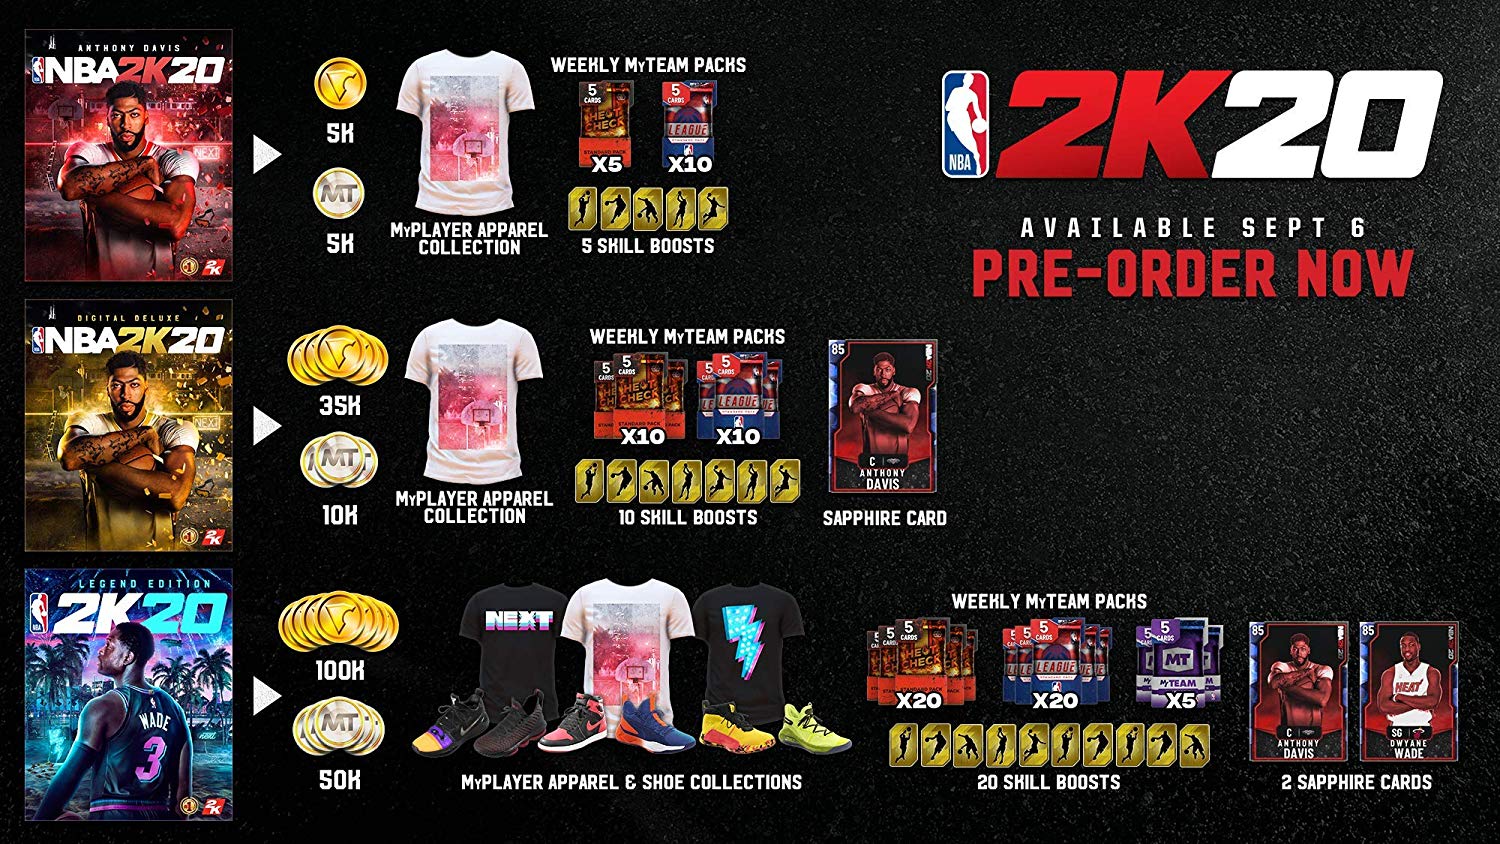 NBA 2K20 (PS4)